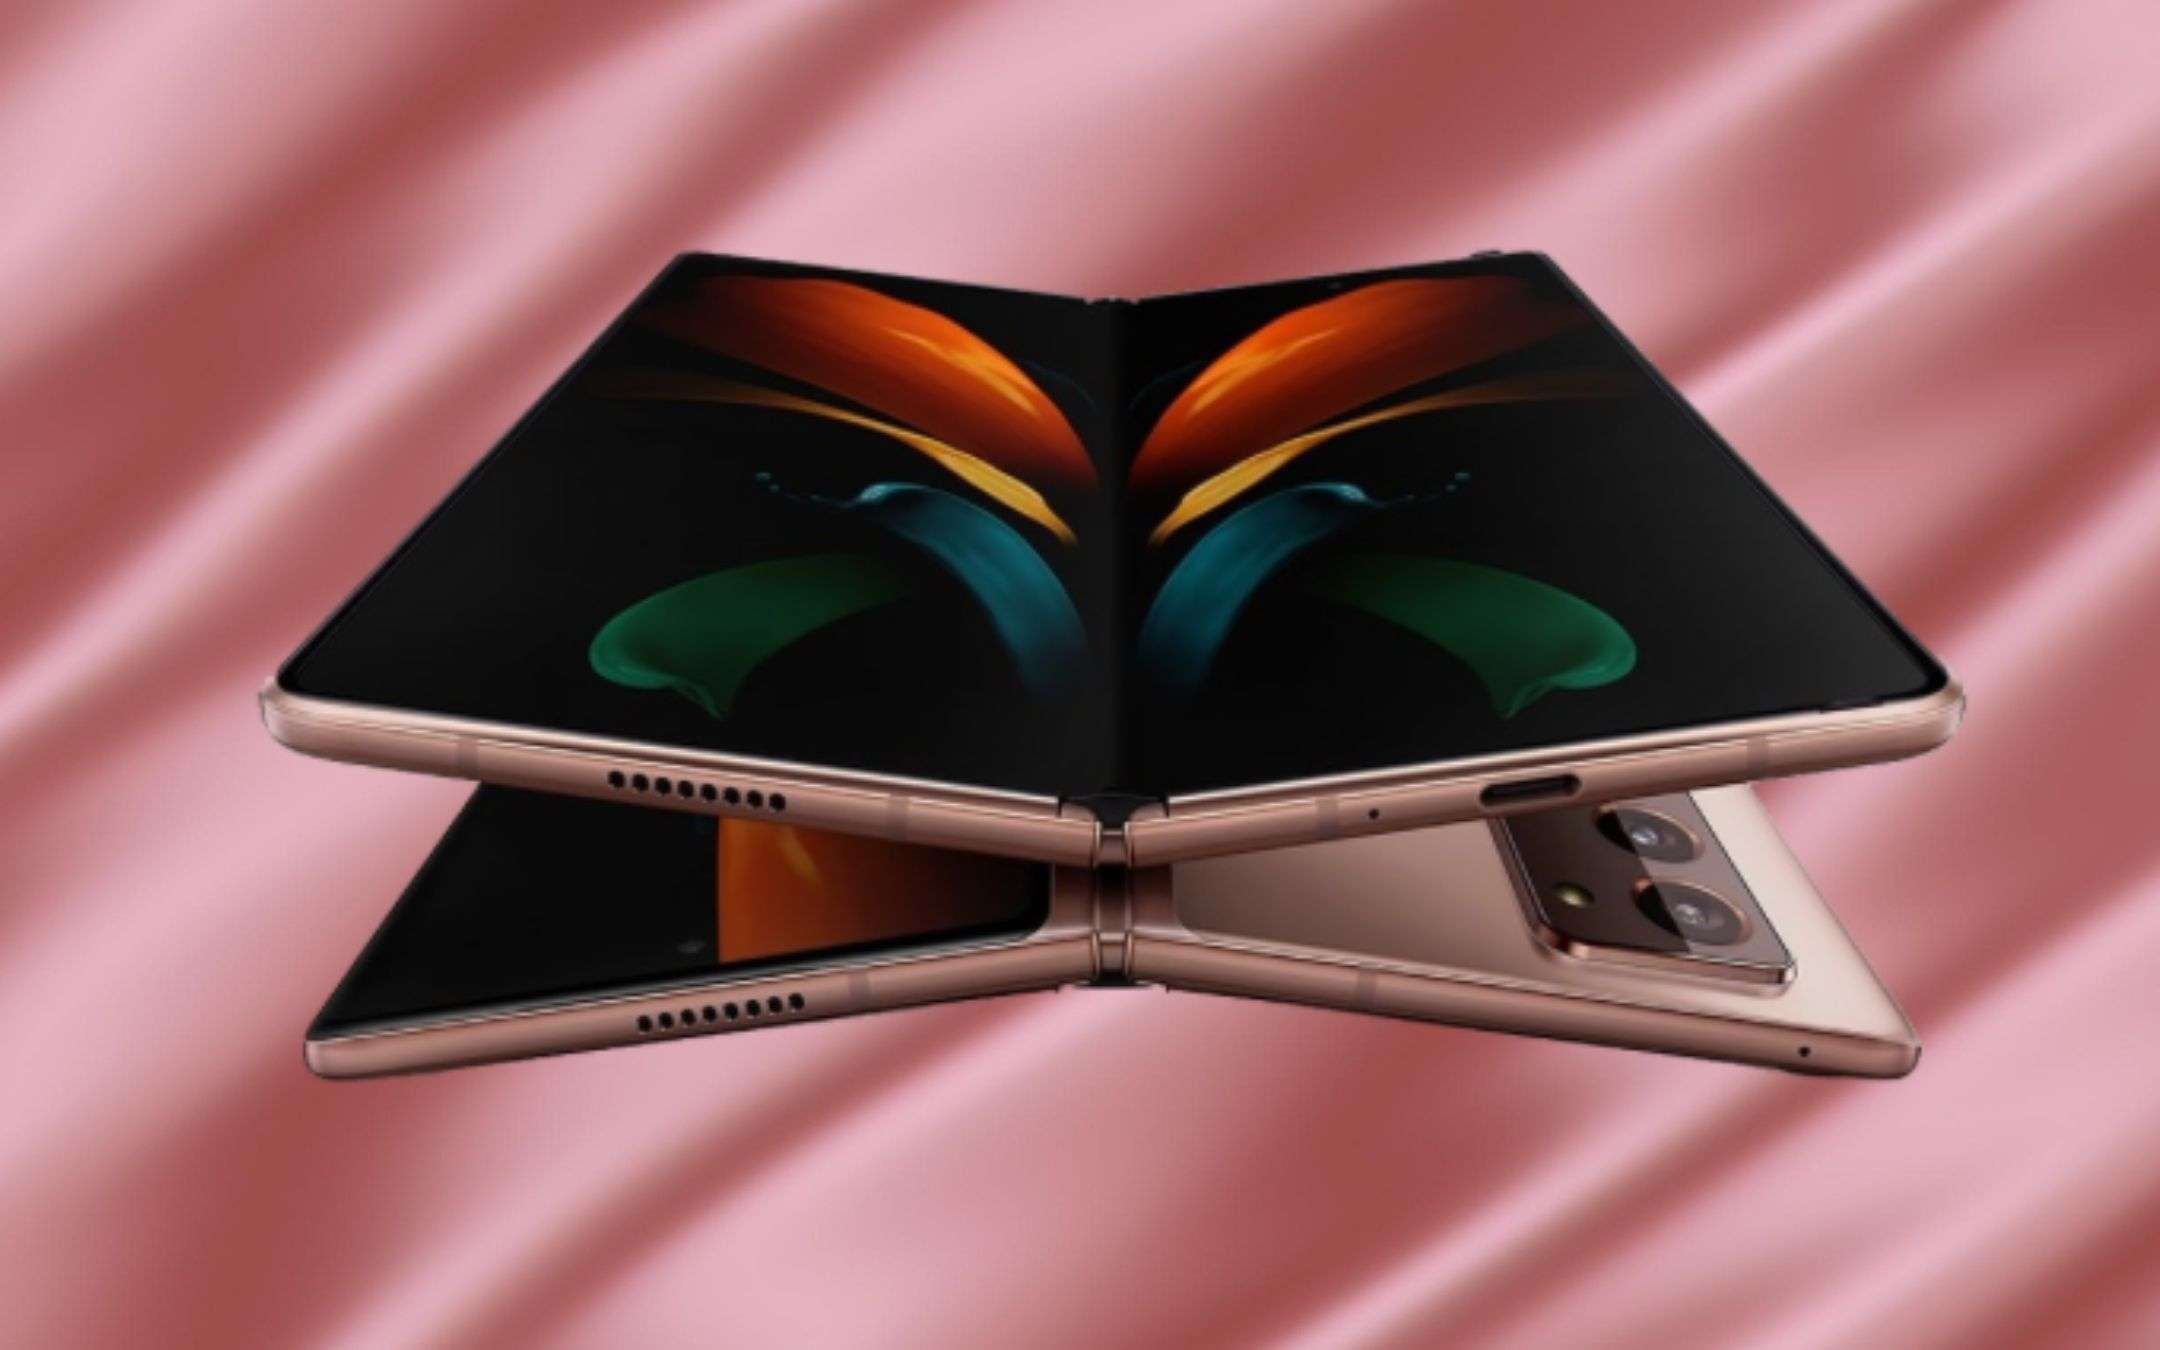 Samsung Galaxy Z Fold2: non è più in commercio?